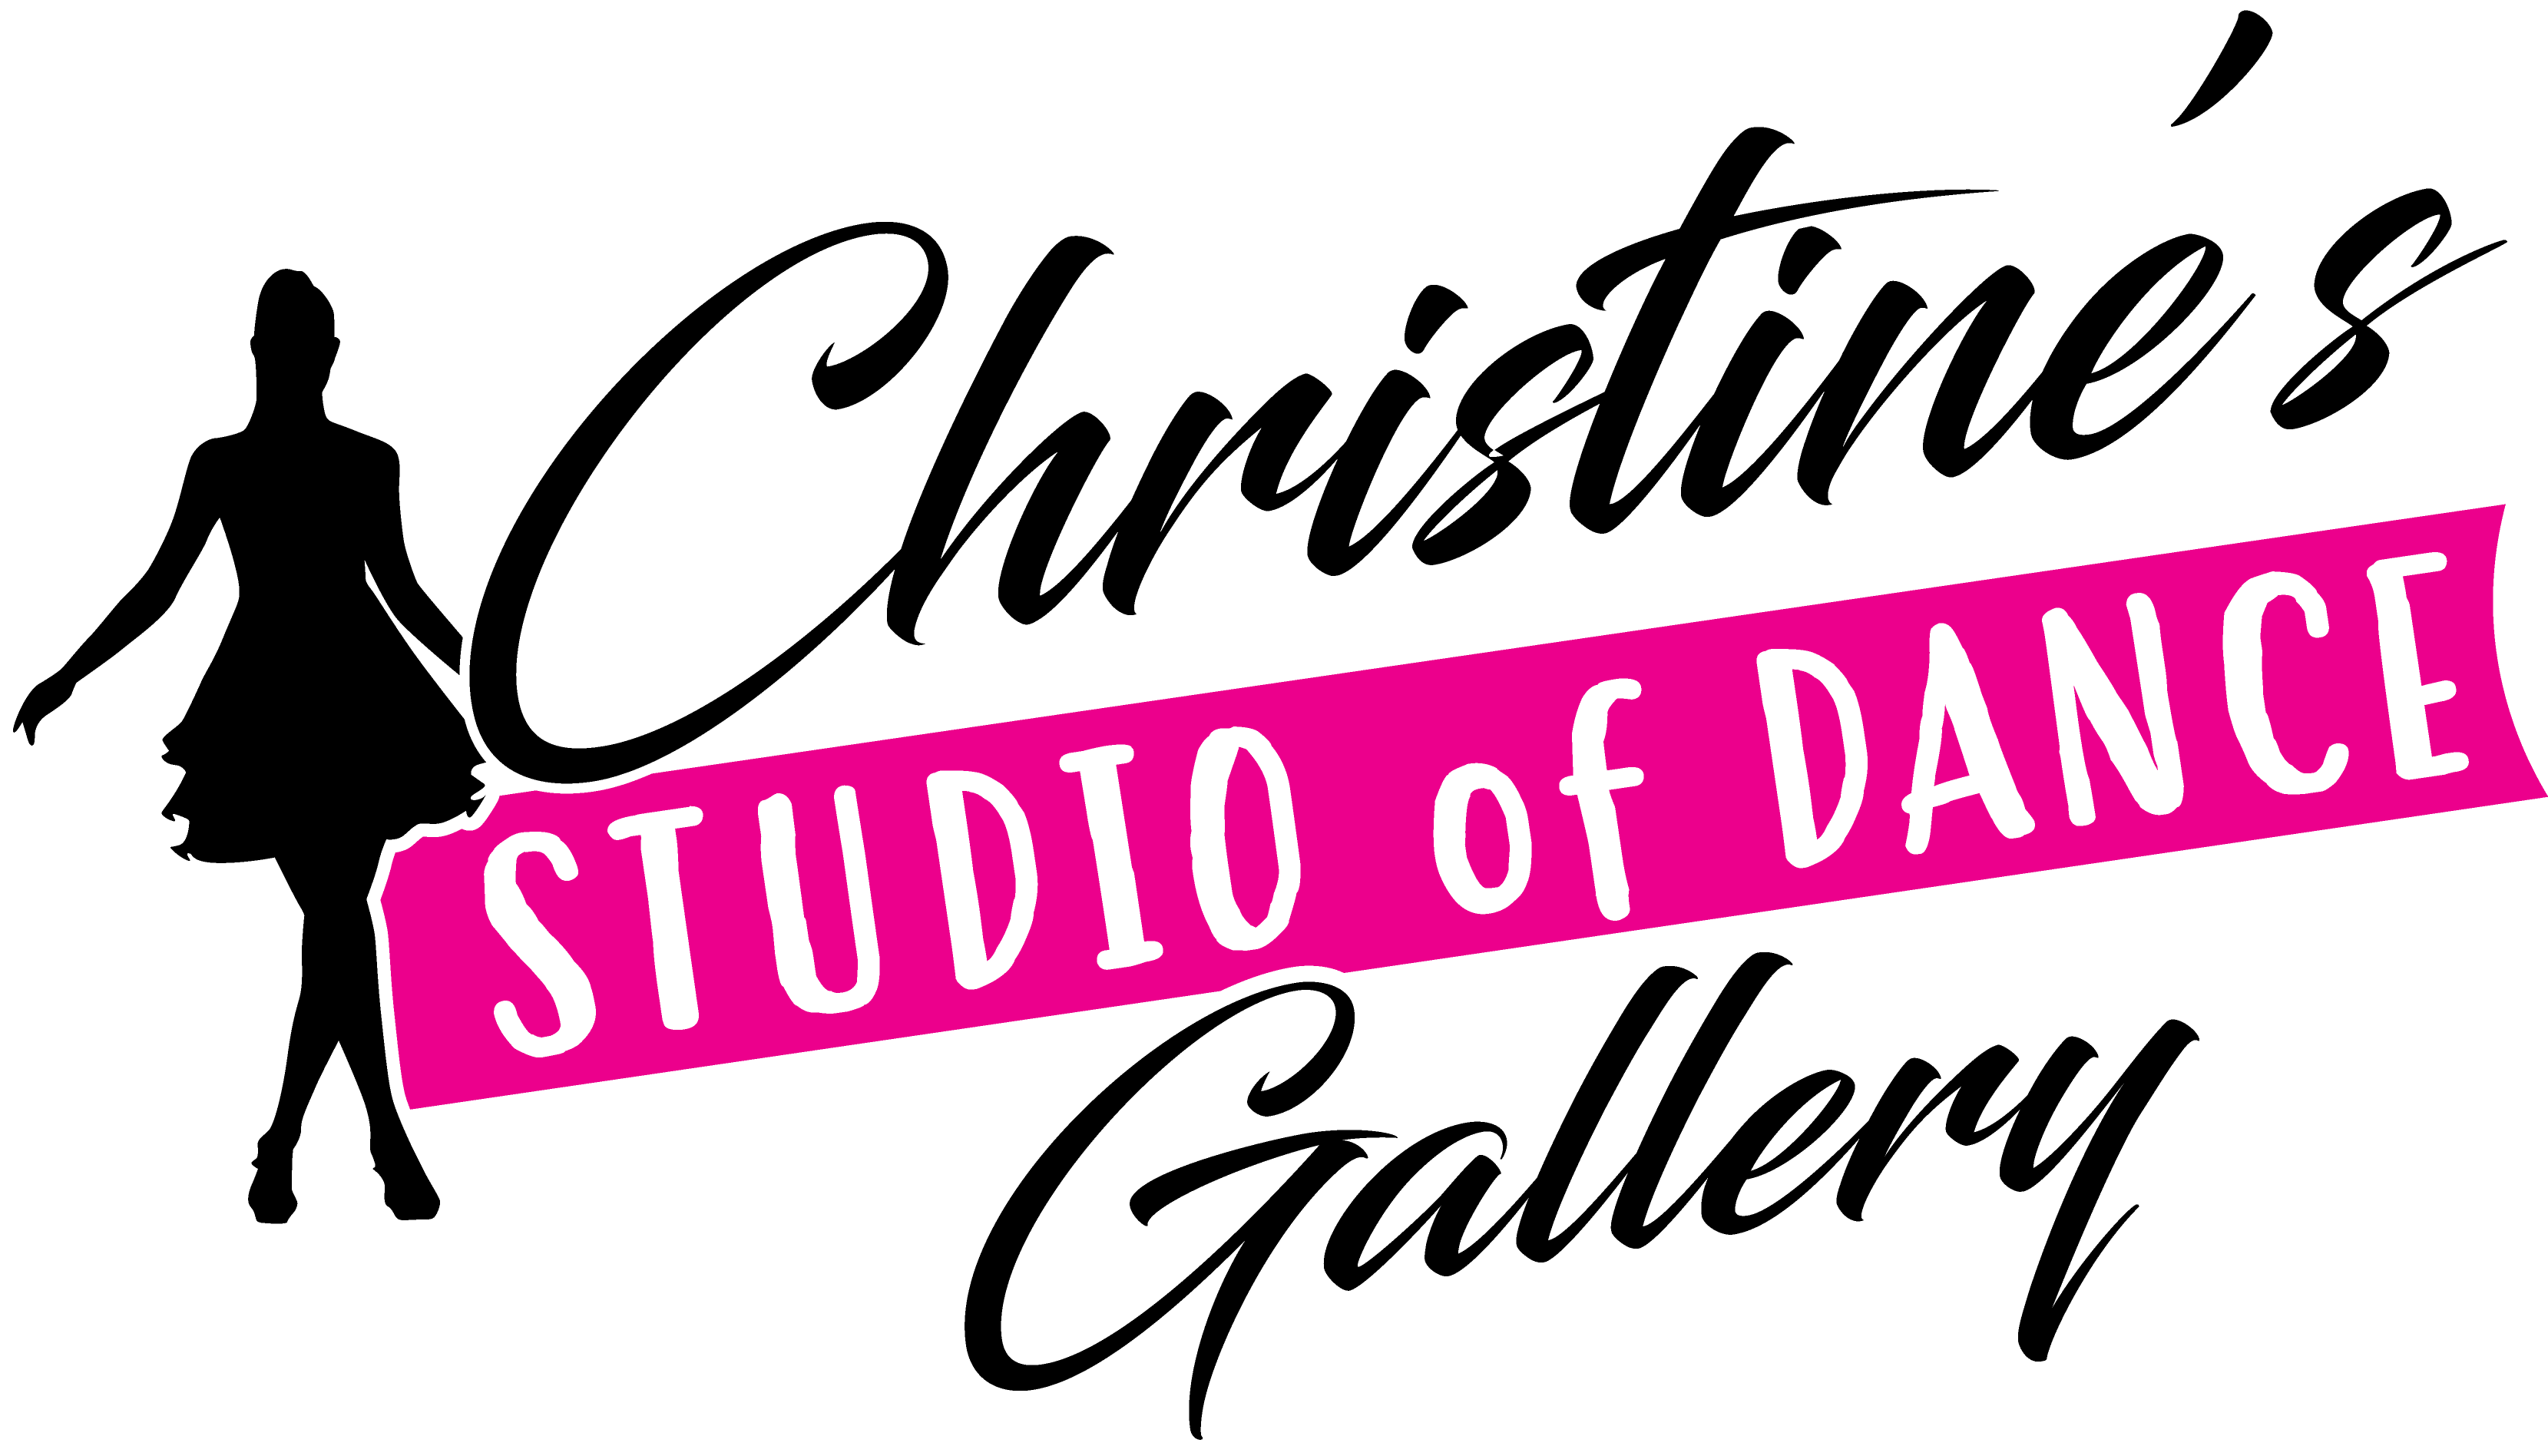 Christine's Studio of Dance